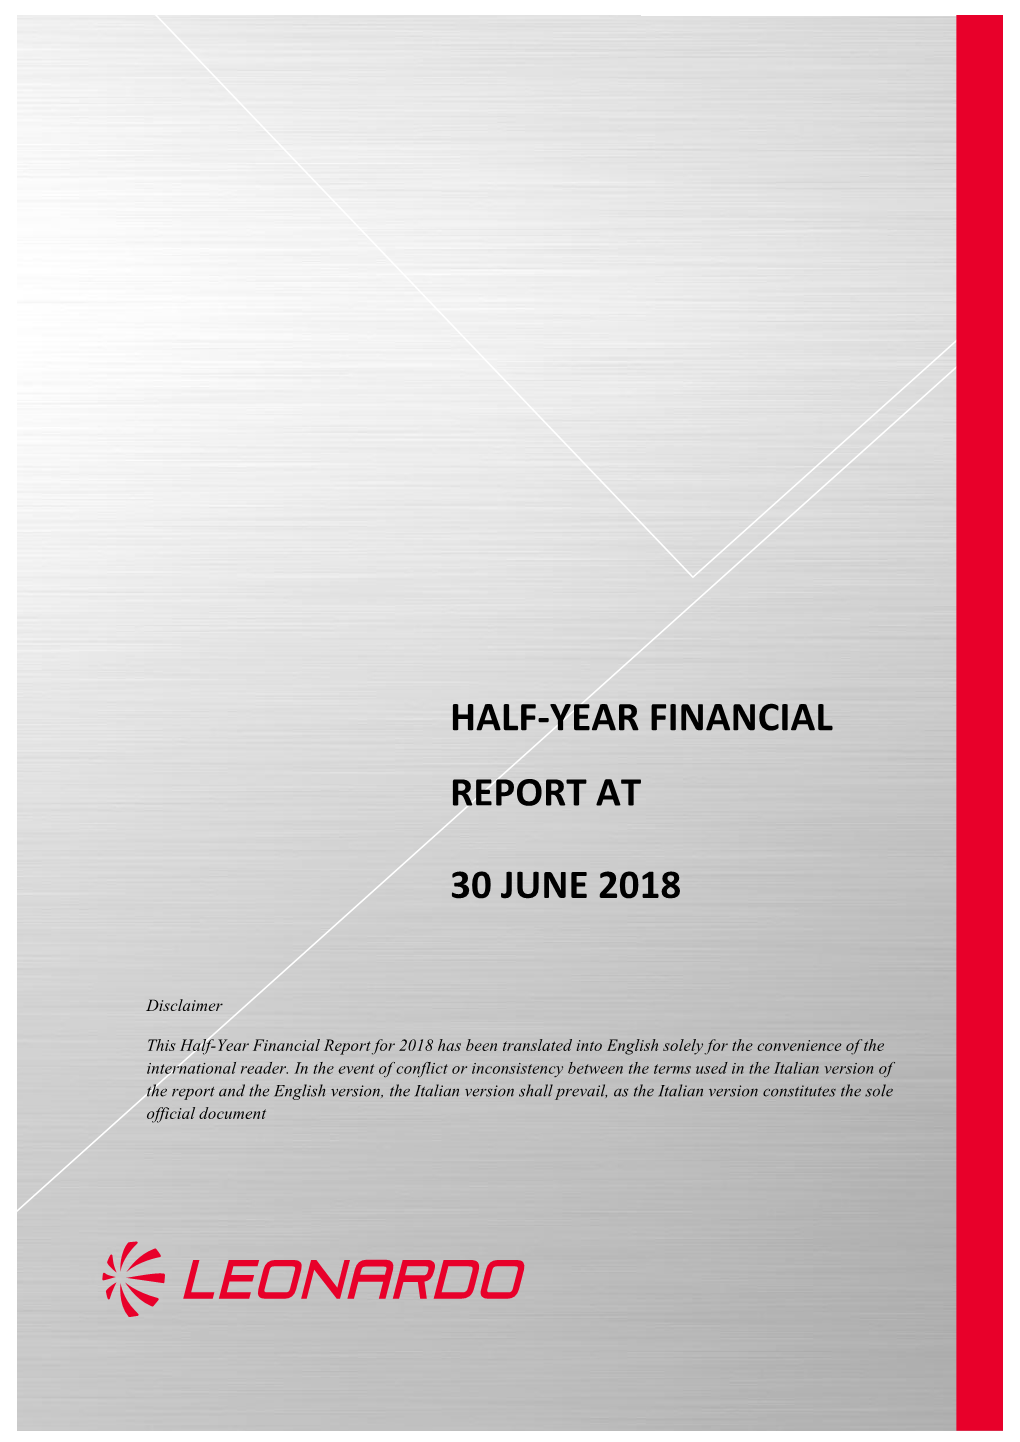 Half-Year Financial Report at 30 June 2018